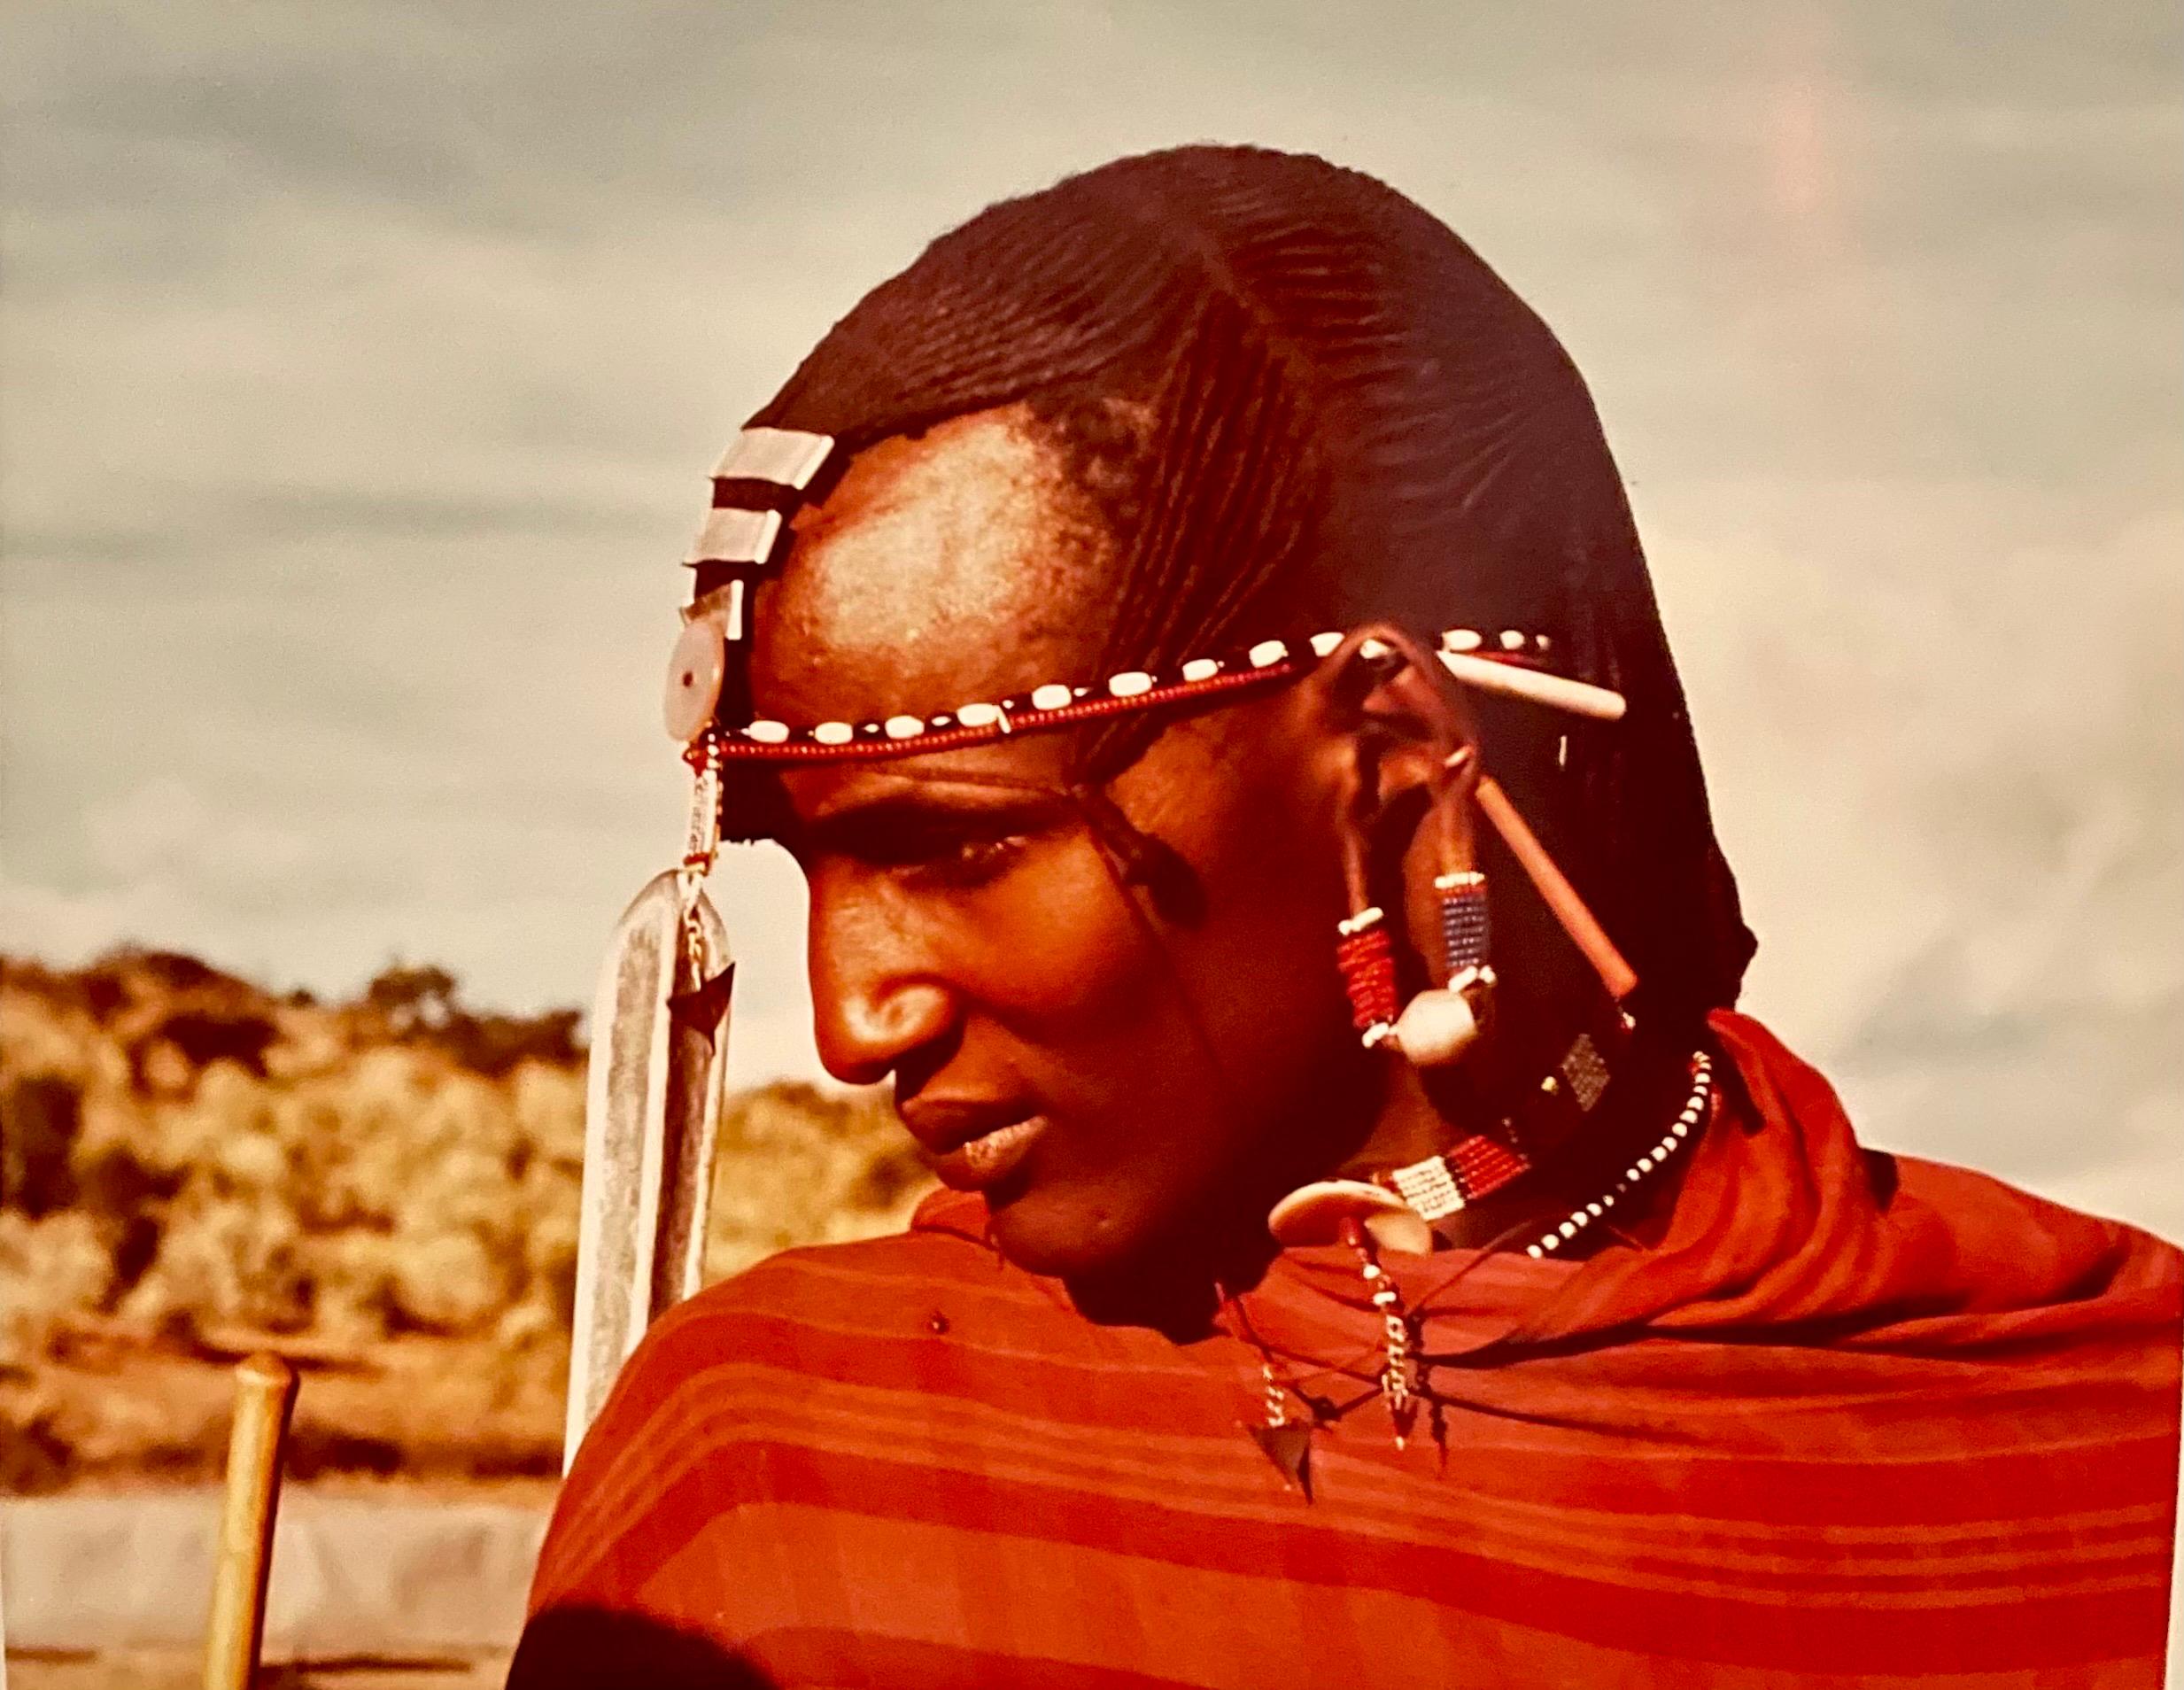 Seltene Vintage-Farb-C-Druck-Fotografie eines Maasai-Kriegers, Chromogenic 